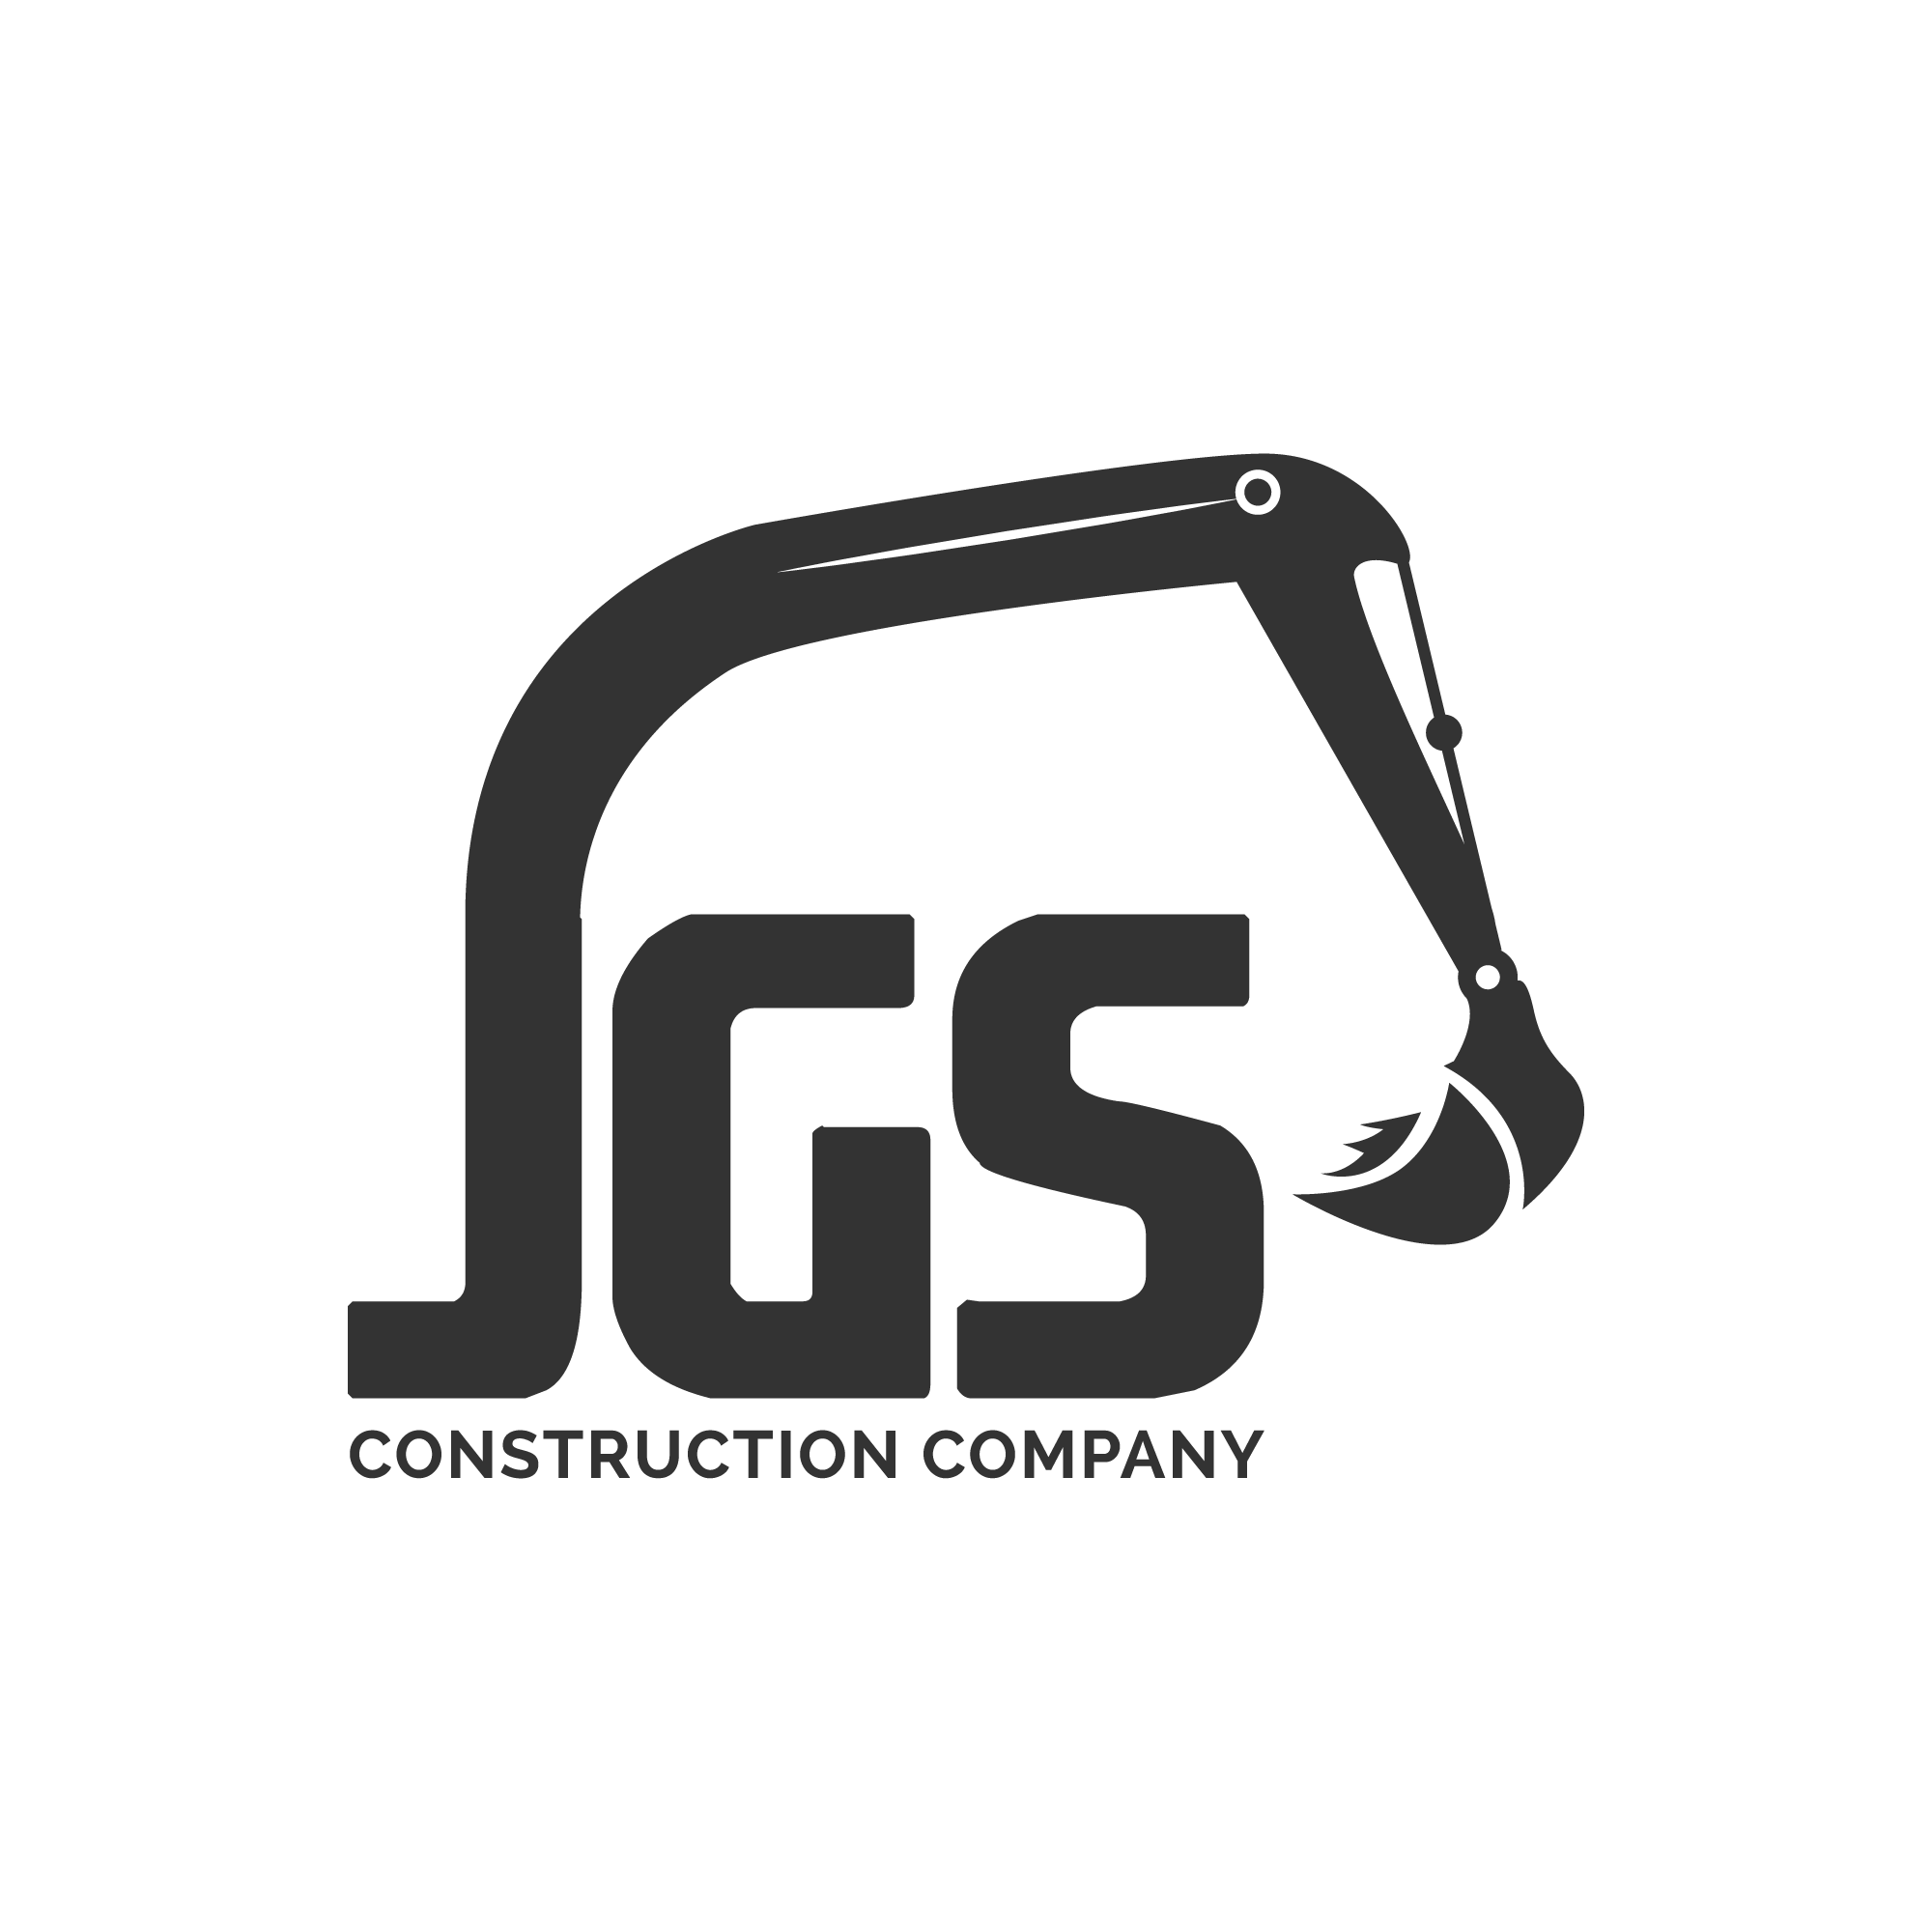 JGS Construction Company 